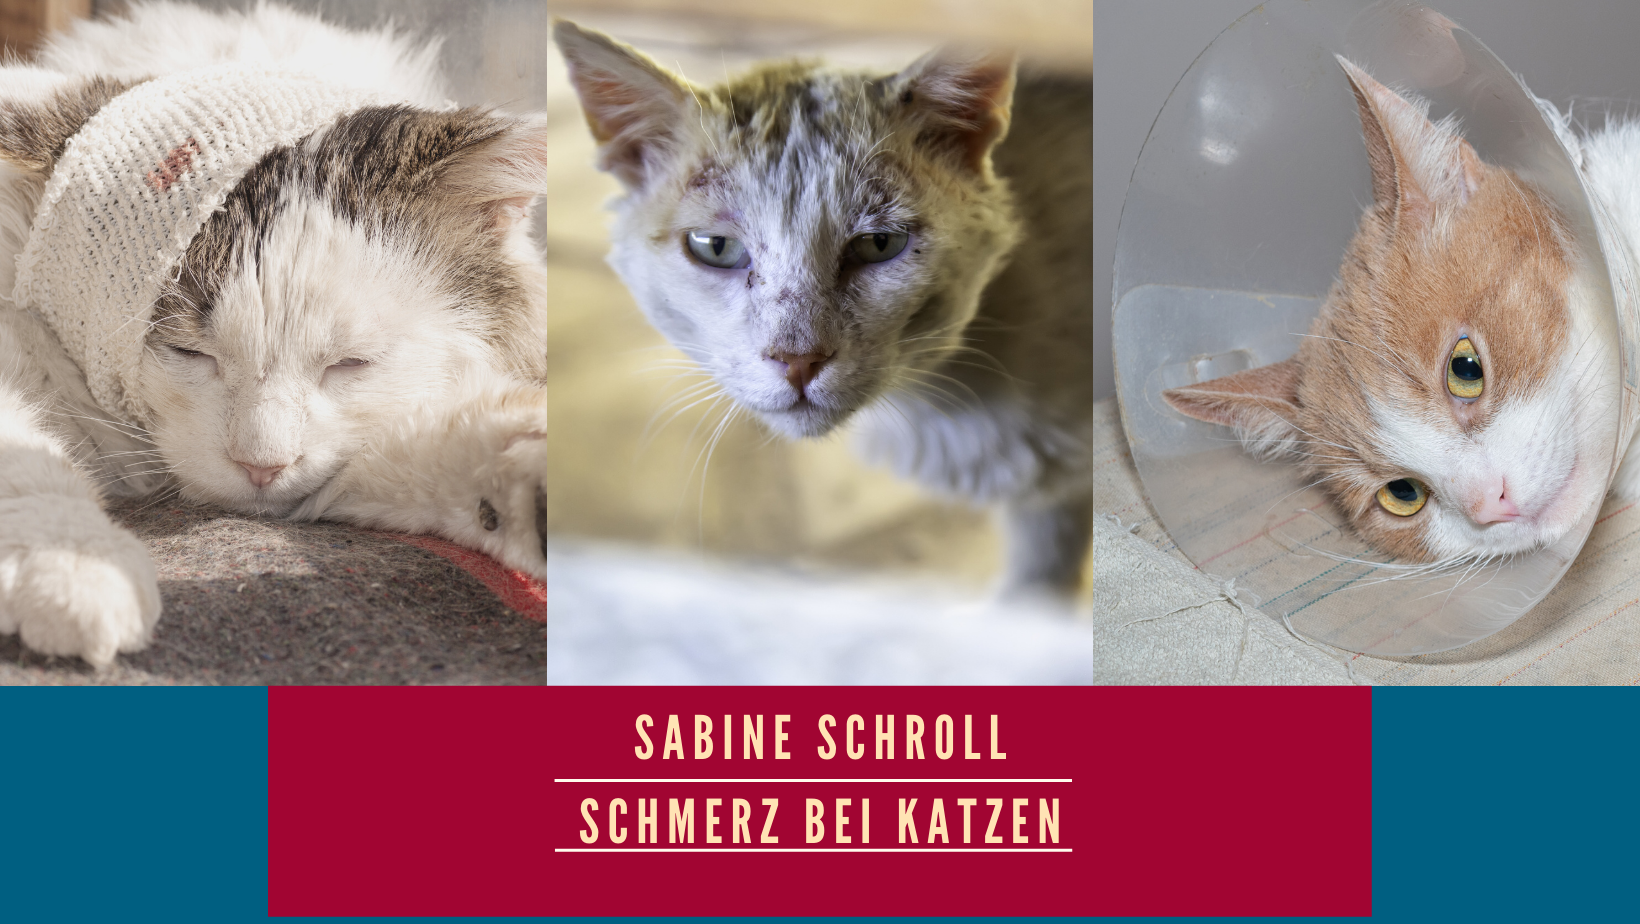 Schmerz bei Katzen Sabine Schroll